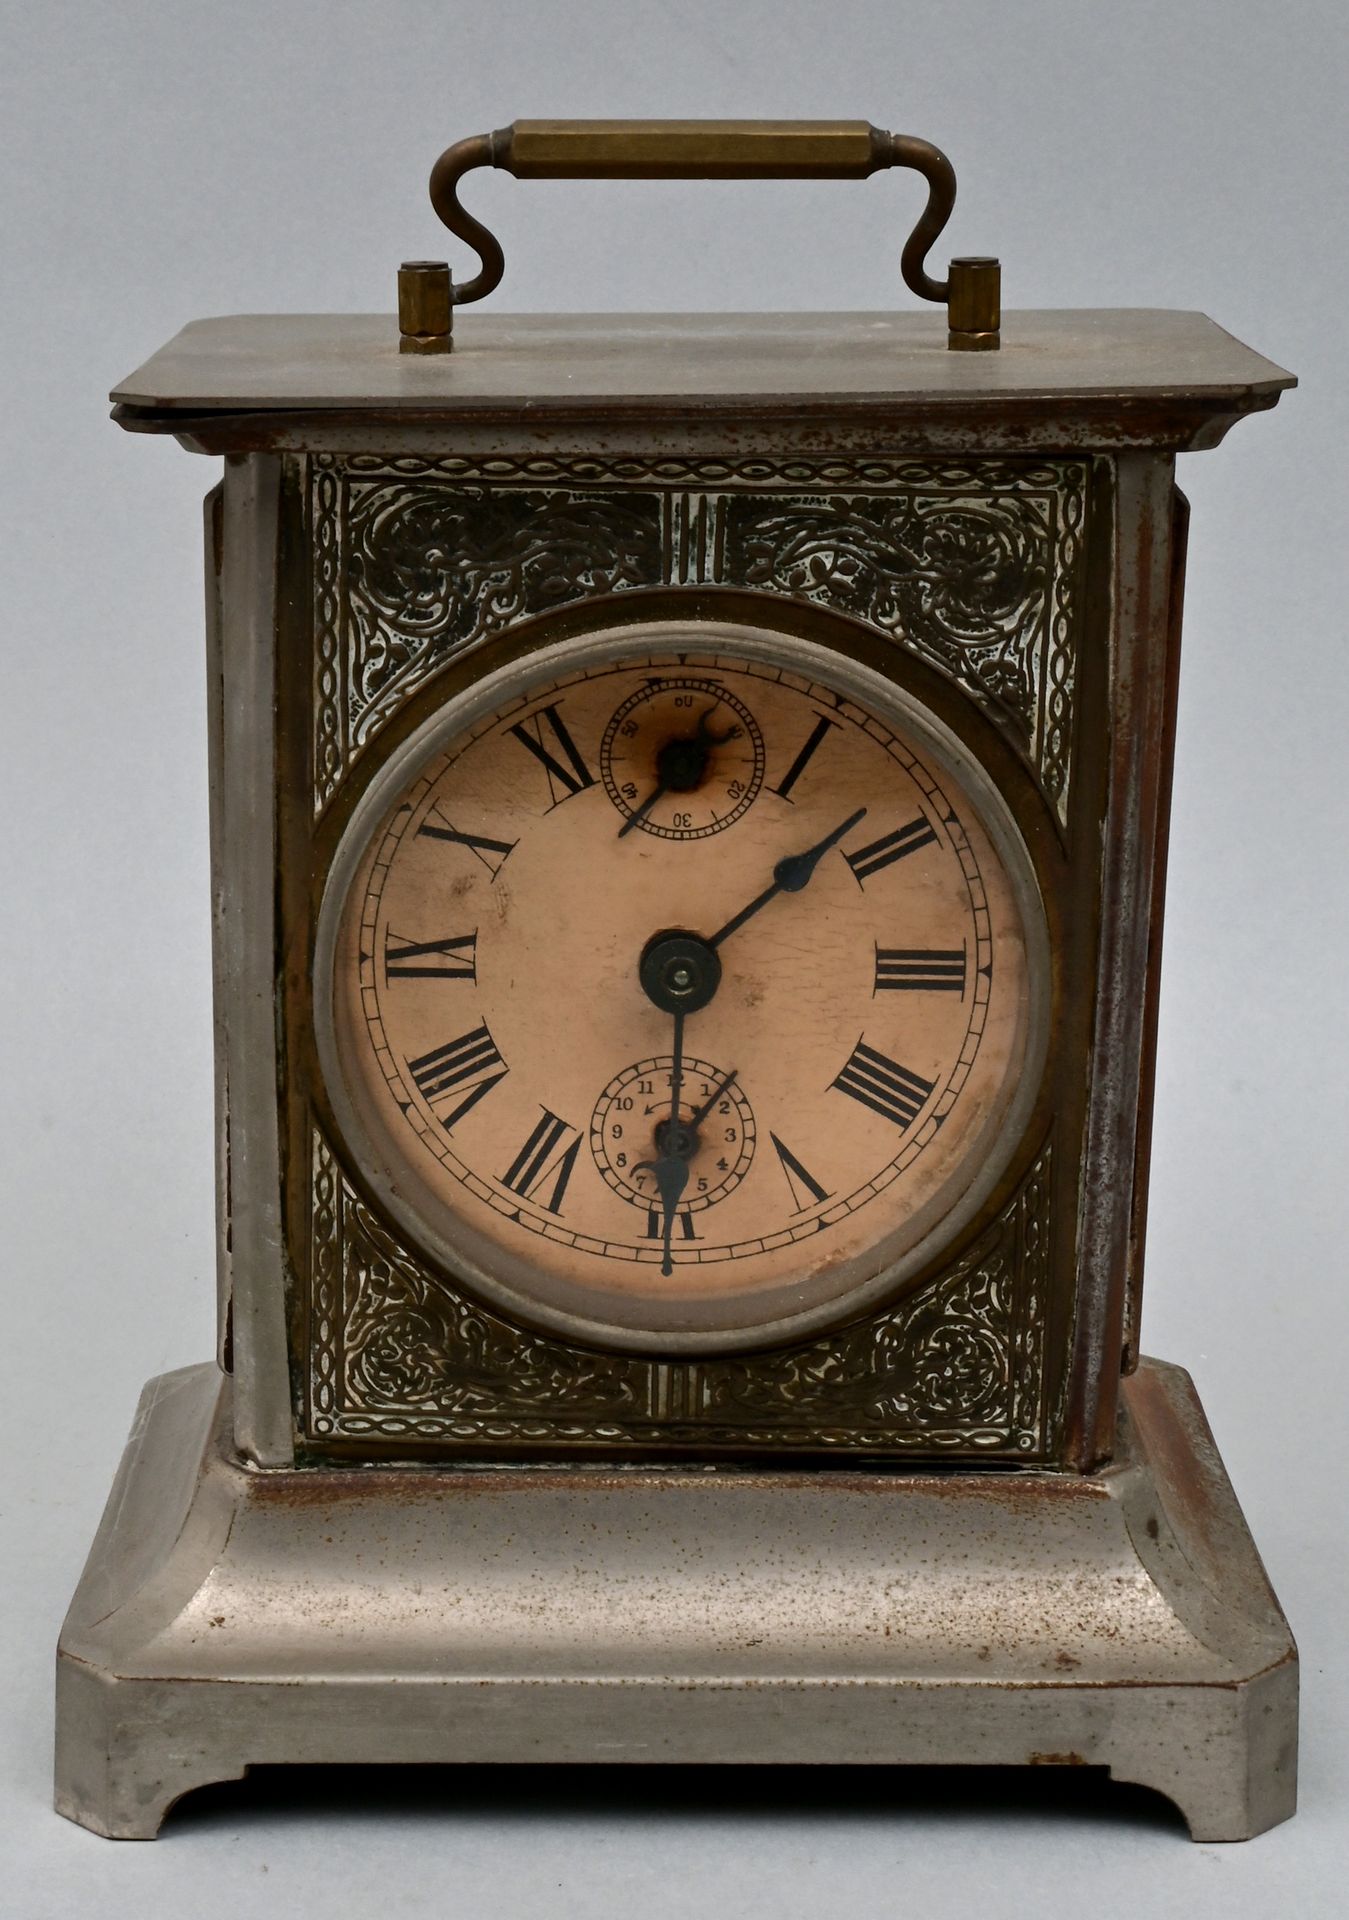 Tischuhr / Reisewecker / Alarm clock Orologio da tavolo/sveglia da viaggio, Schr&hellip;